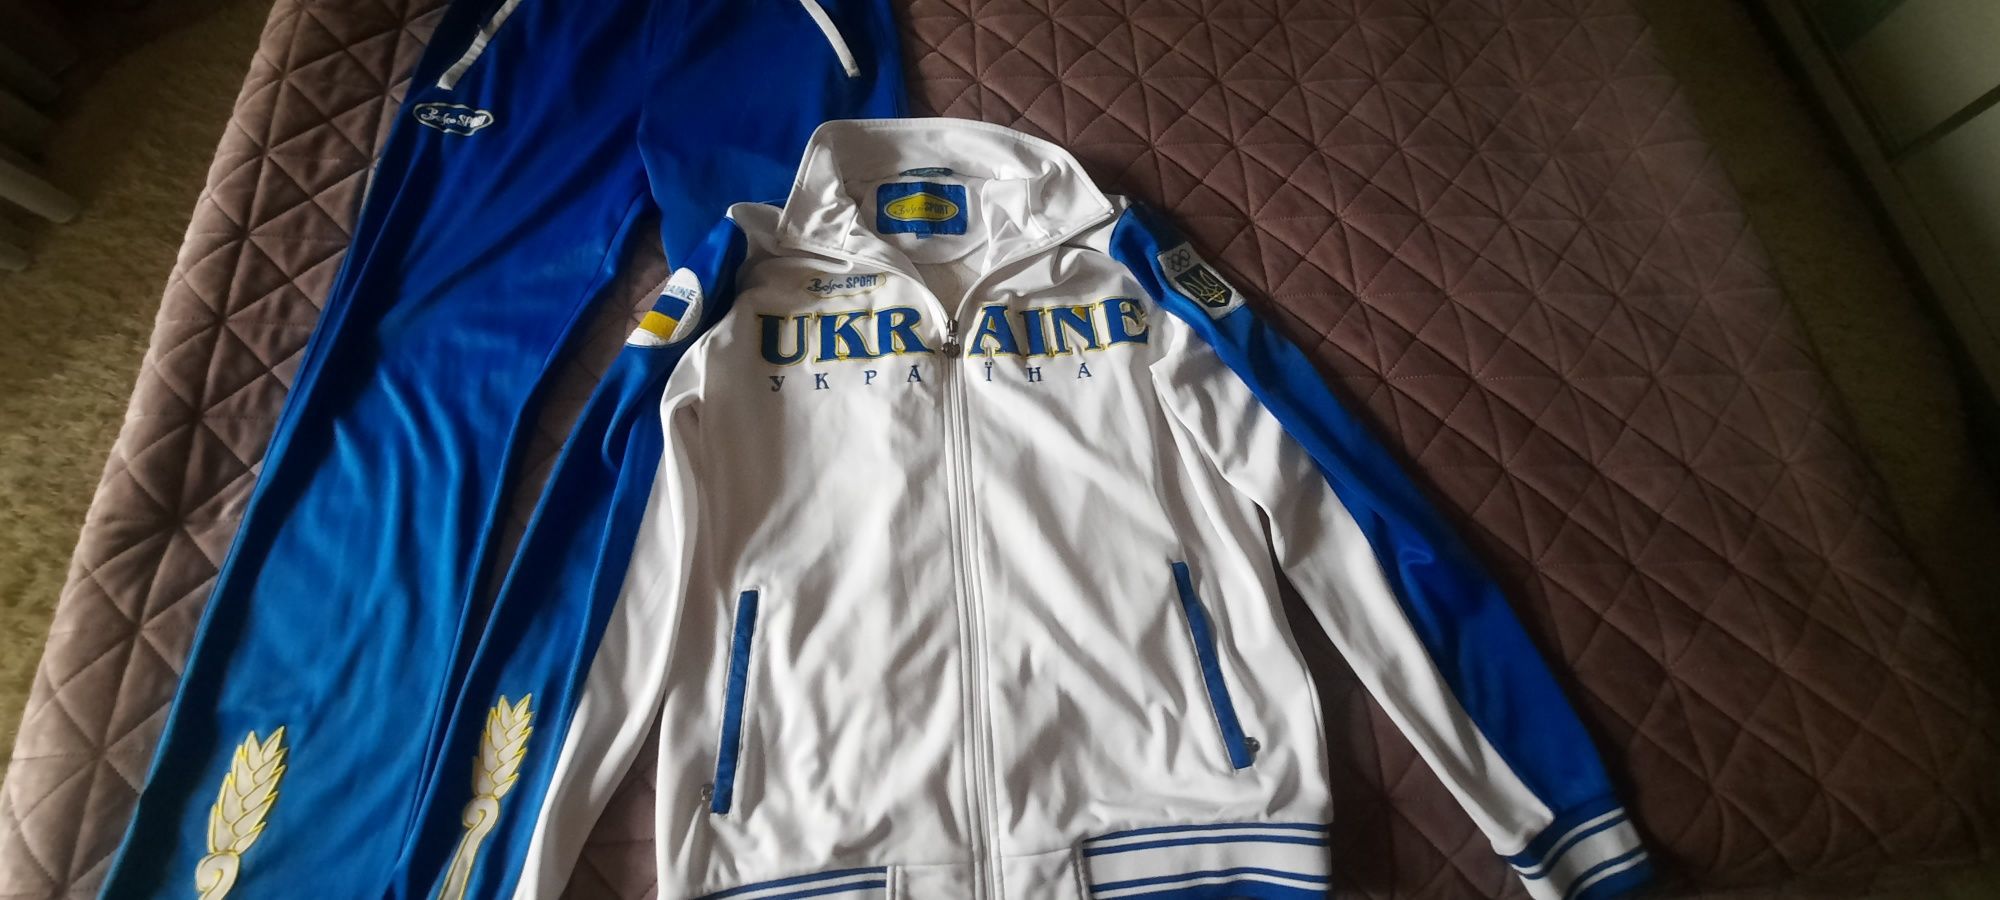 Продам костюм спортивный мужской  BOSCO зборная Украина!